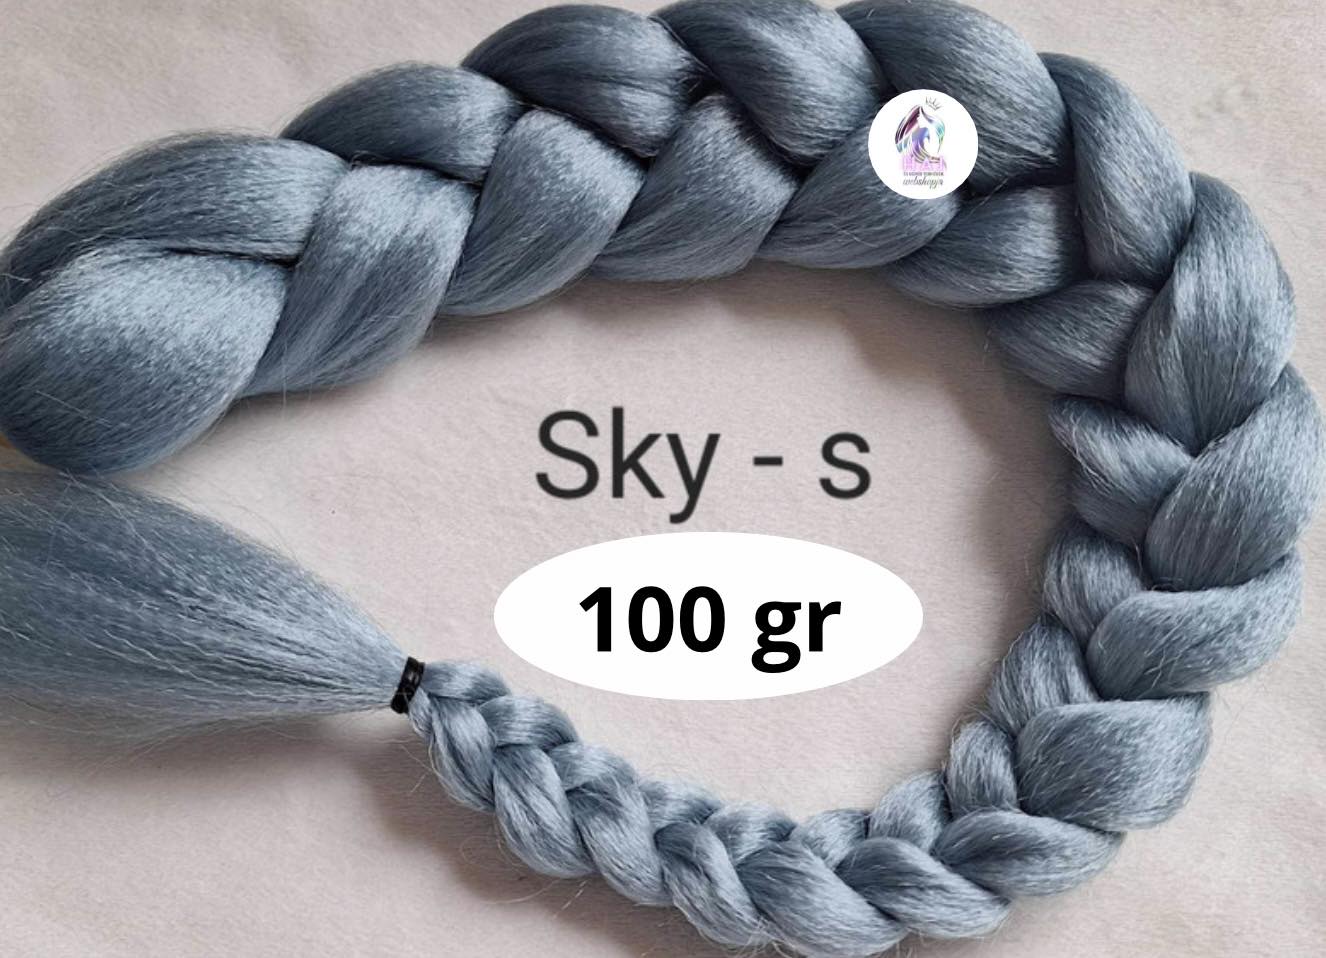 Sky - s 100 gr - 1.700 Ft